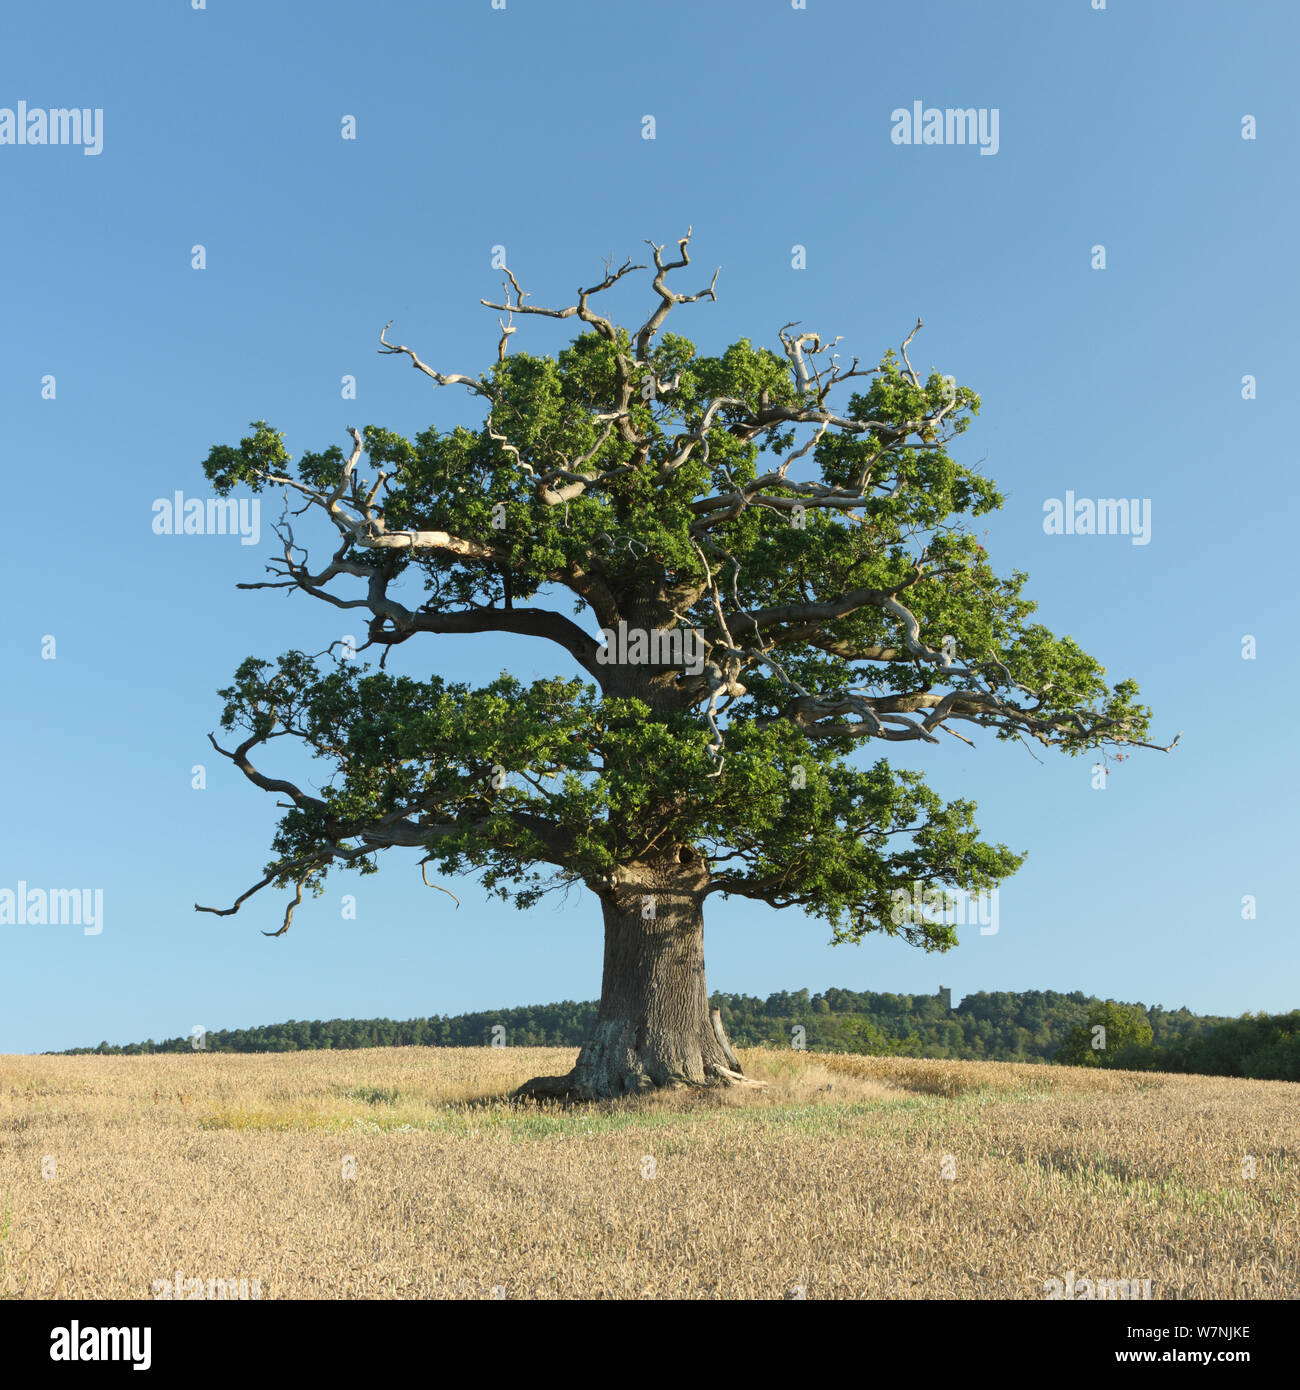 Arbre de chêne français (Quercus robur) portrait en été, Surrey, Royaume-Uni, Août Banque D'Images